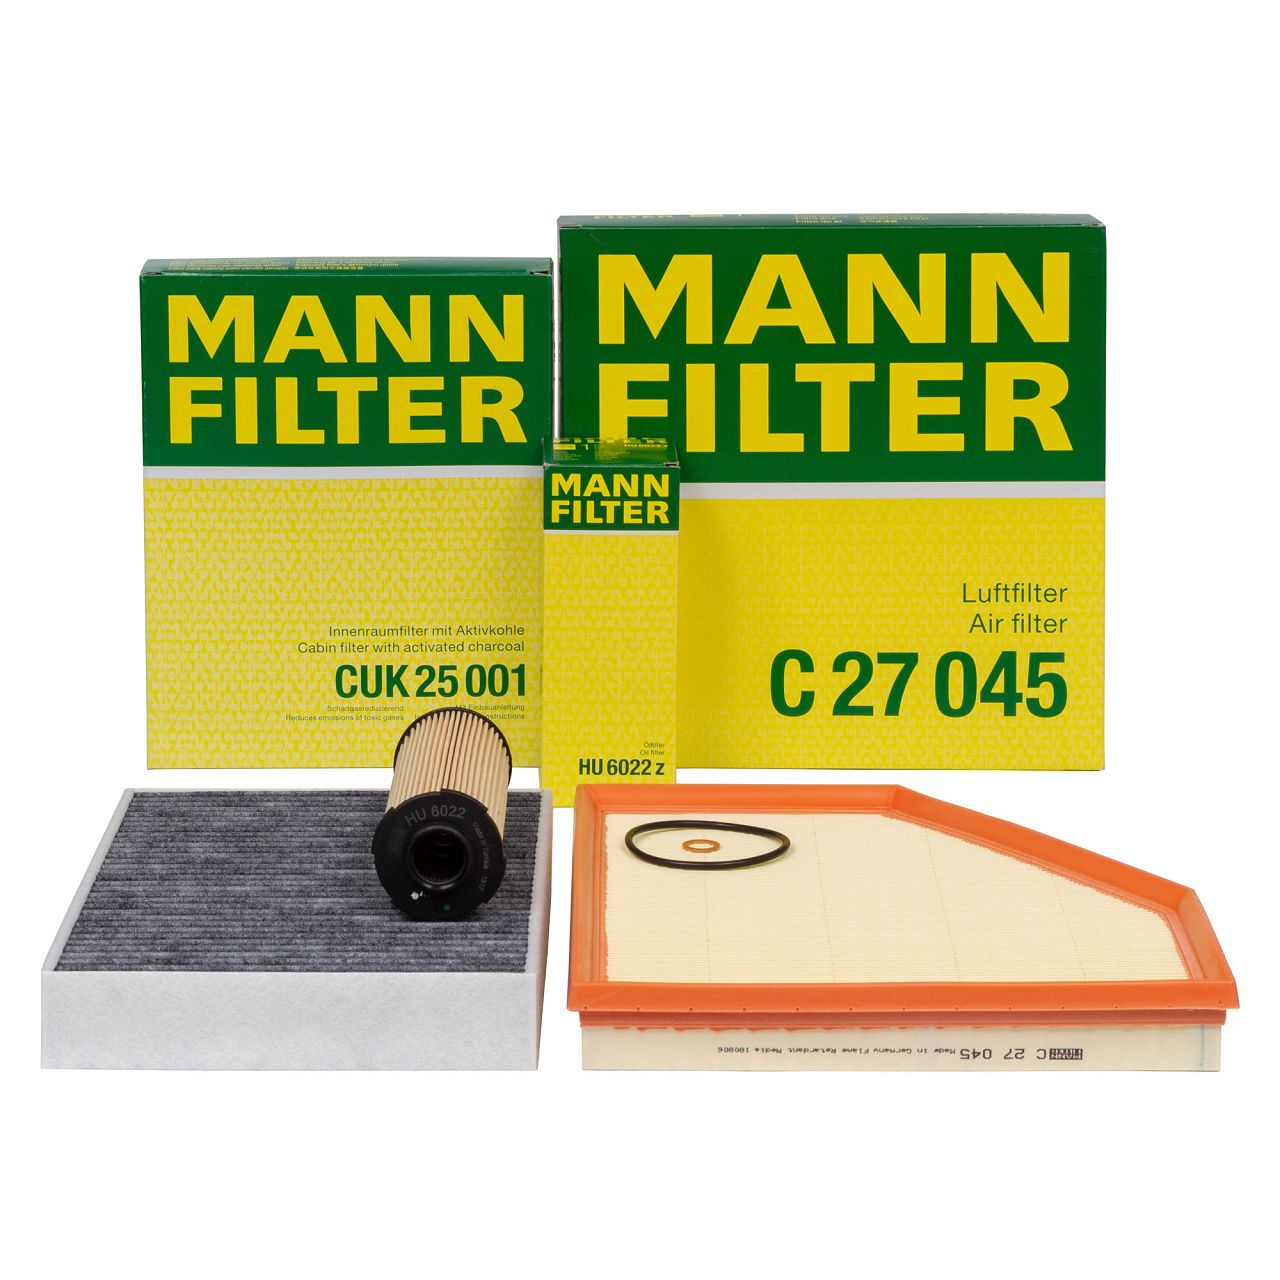 MANN Filter-Set BMW 1er F20 F21 M140i 2er F22 F23 M240i 3er F30-34 340i 4er F32-36 440i B58